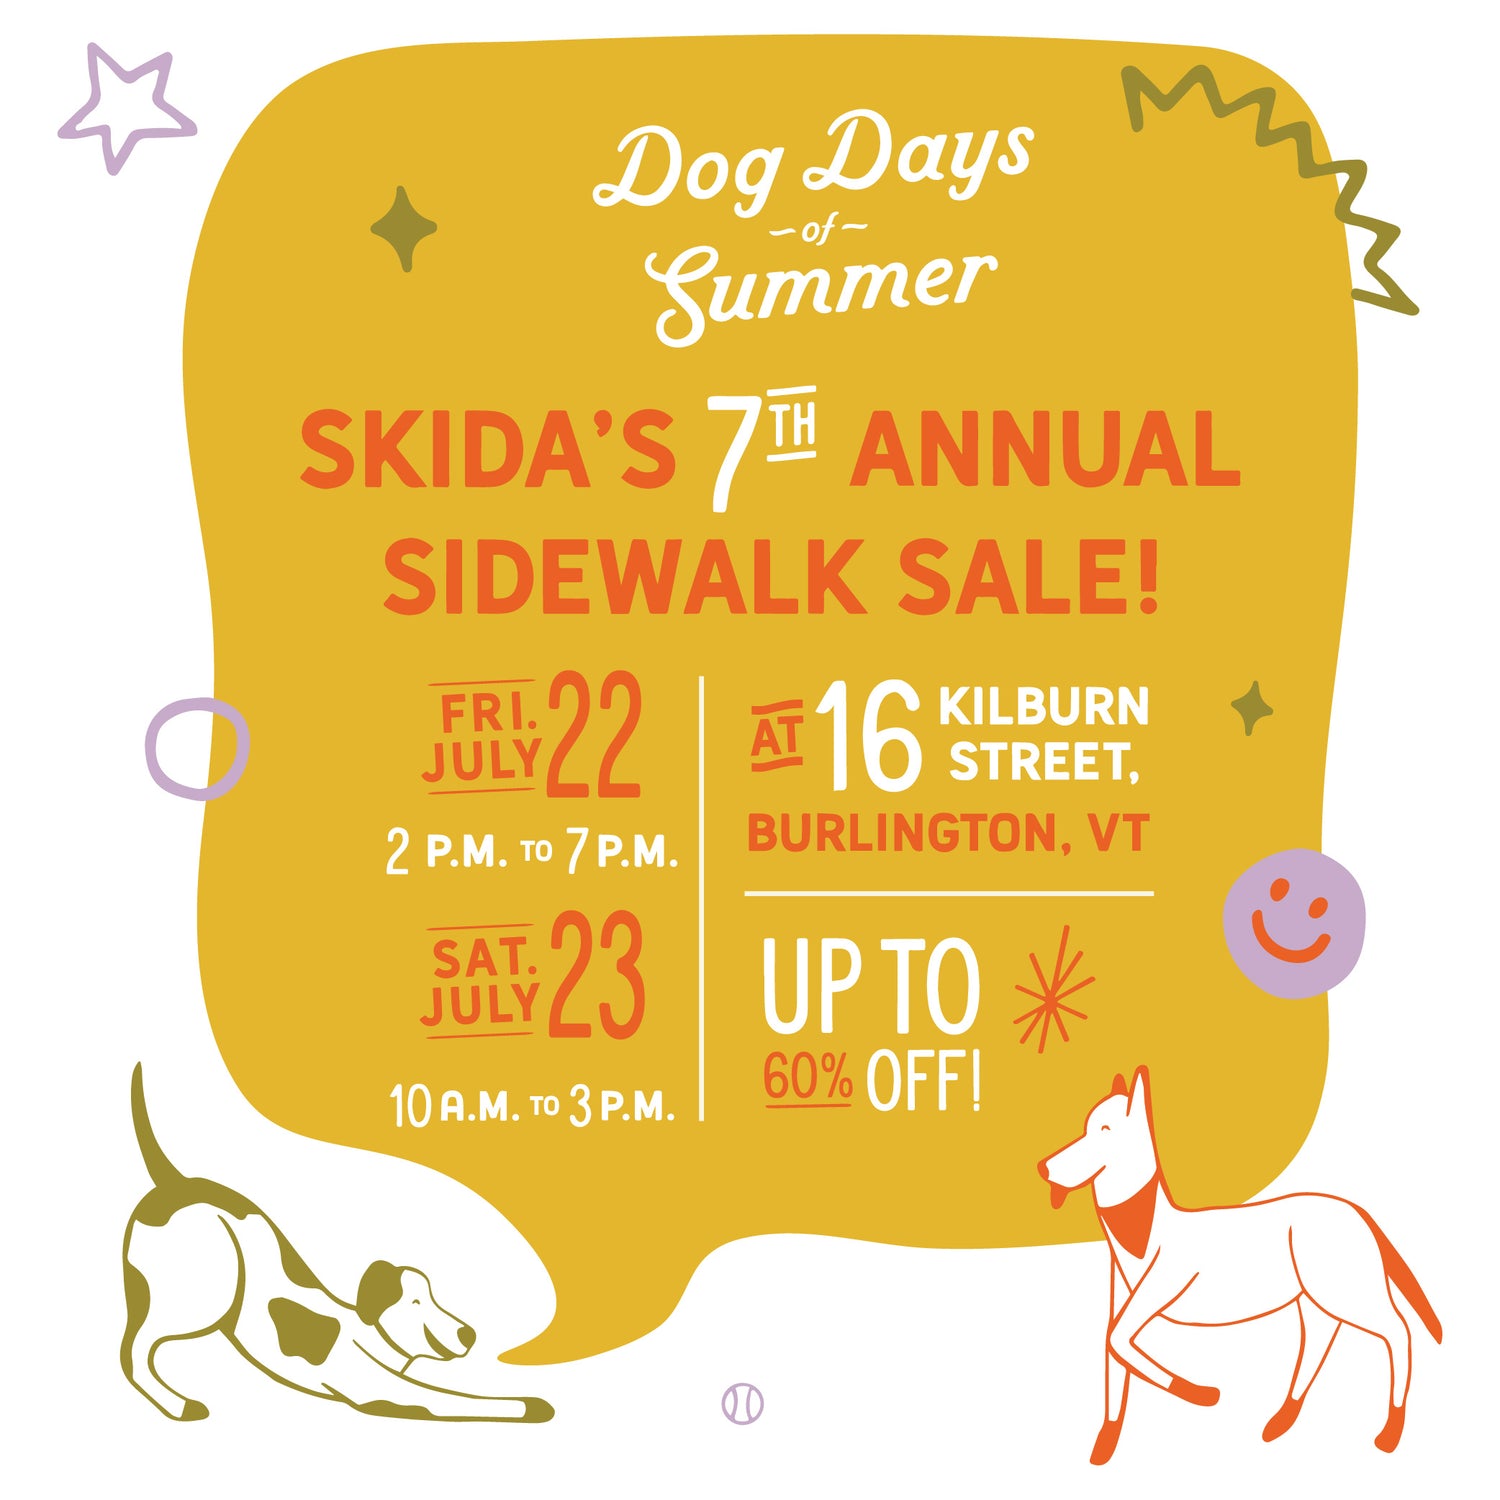 Our 7th Annual Sidewalk Sale!